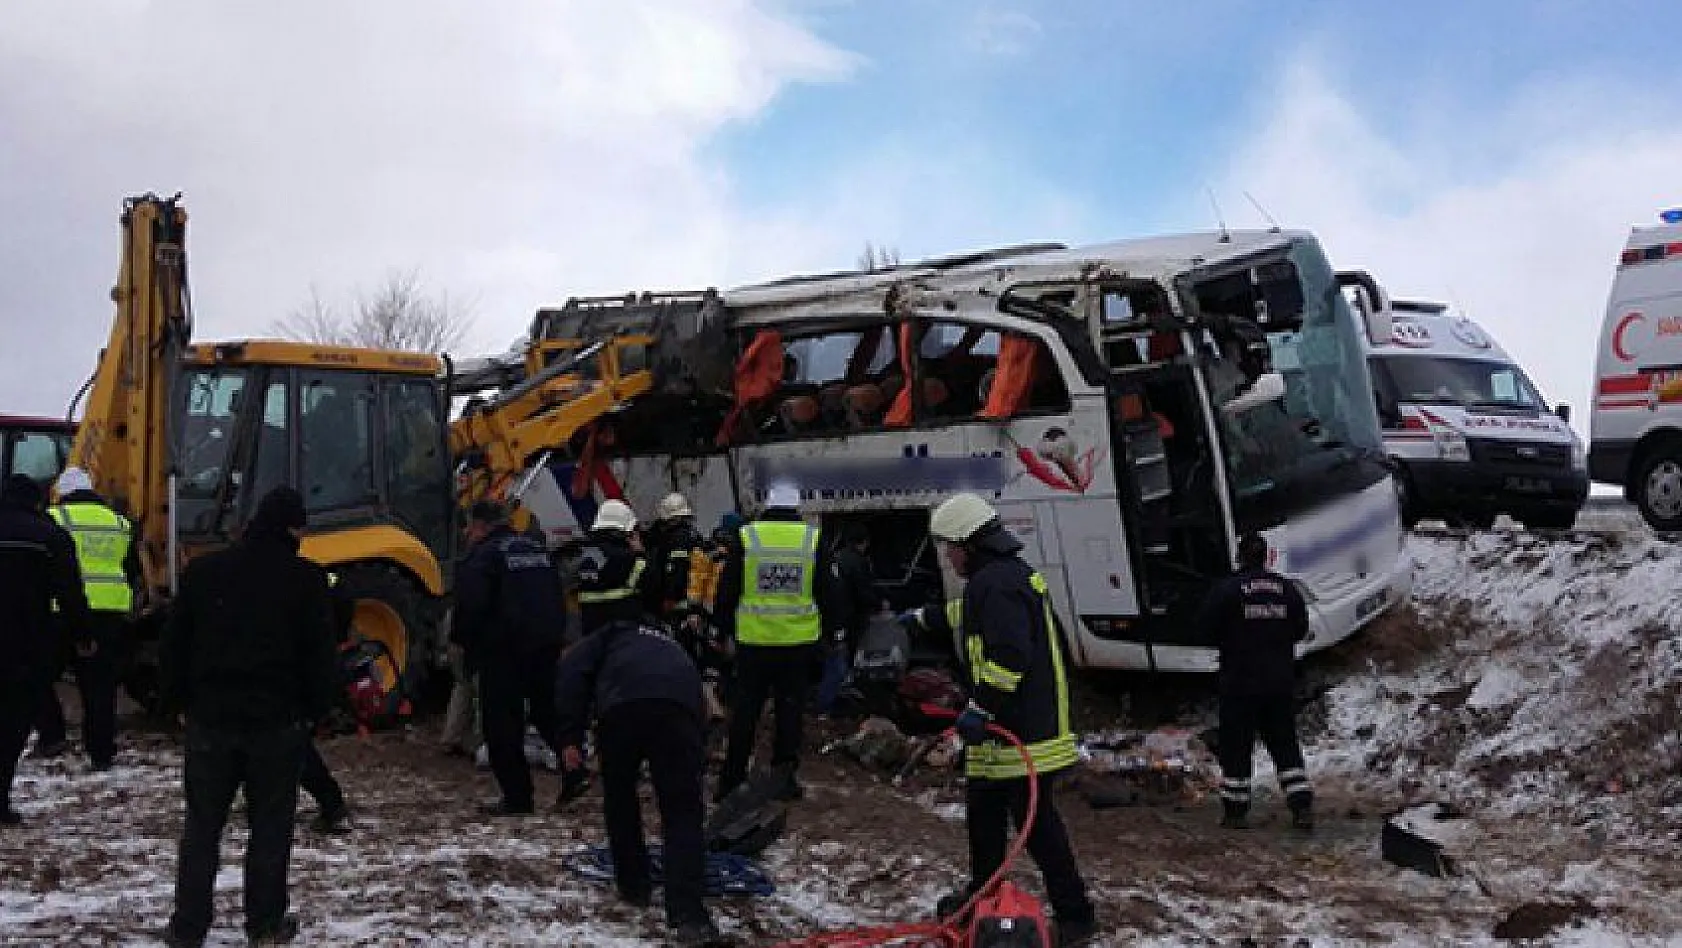 Sarız'da 2 yolcu otobüsü devrildi: 31 yaralı